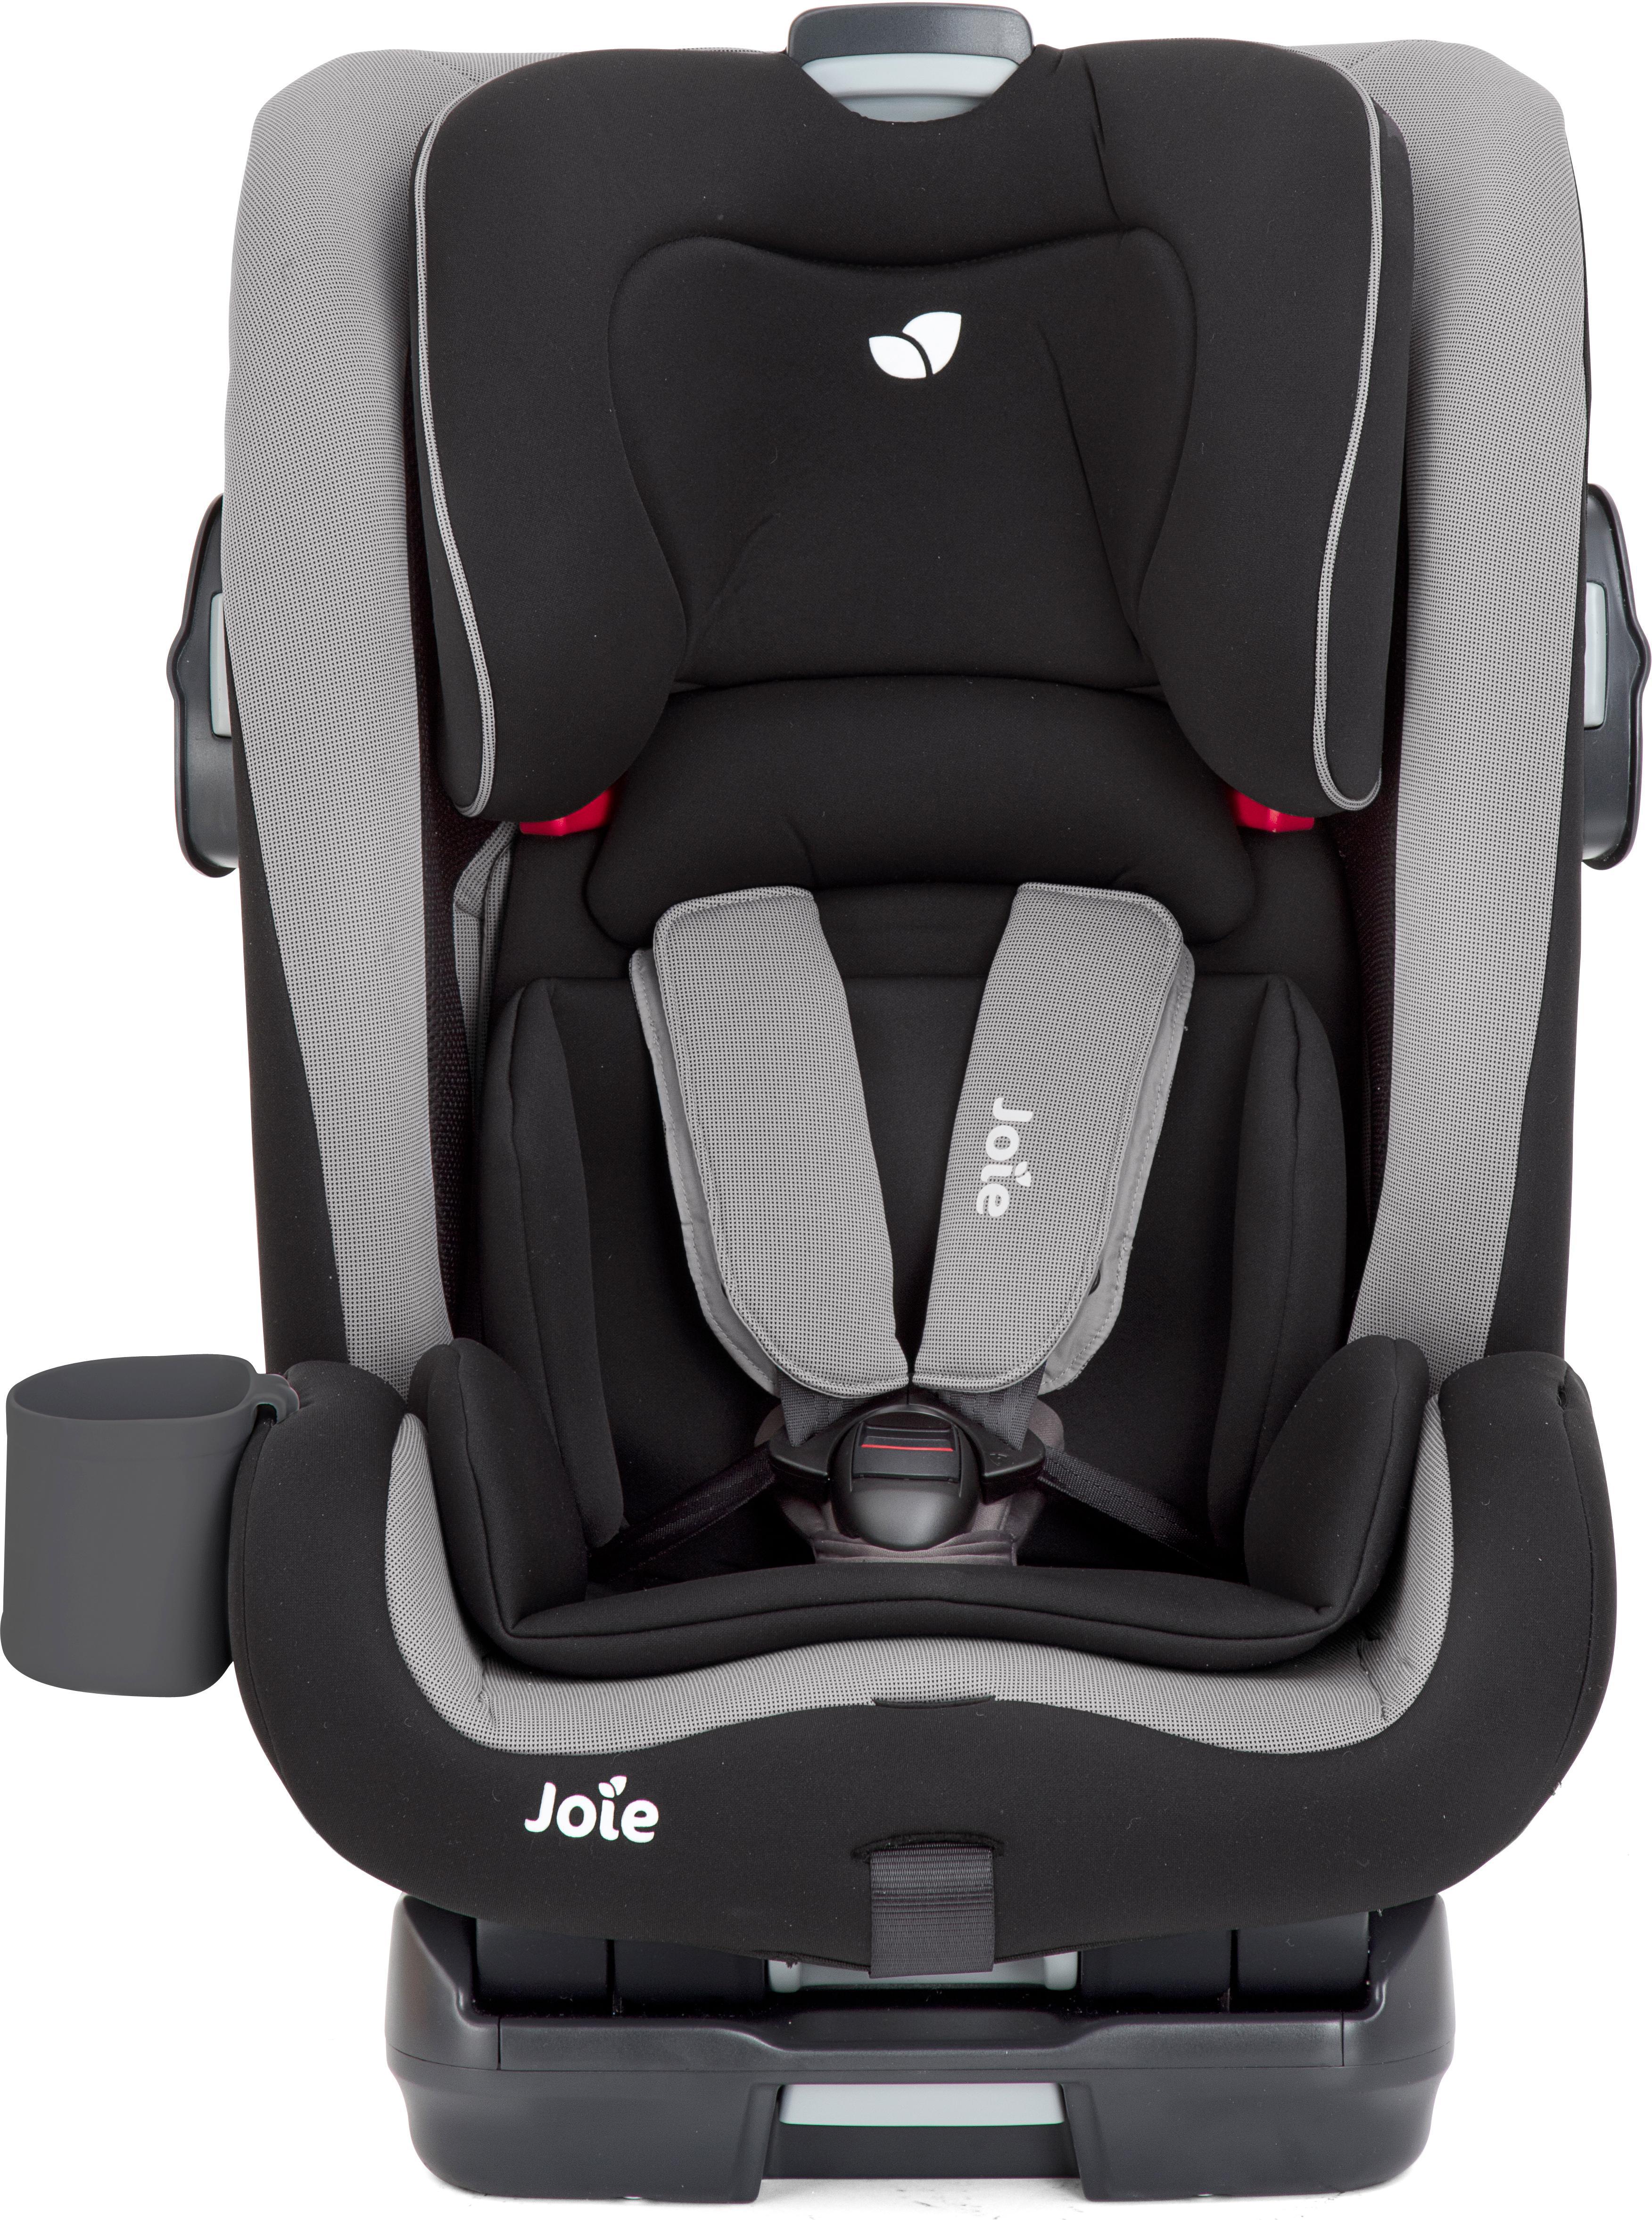 isofix car seat deals